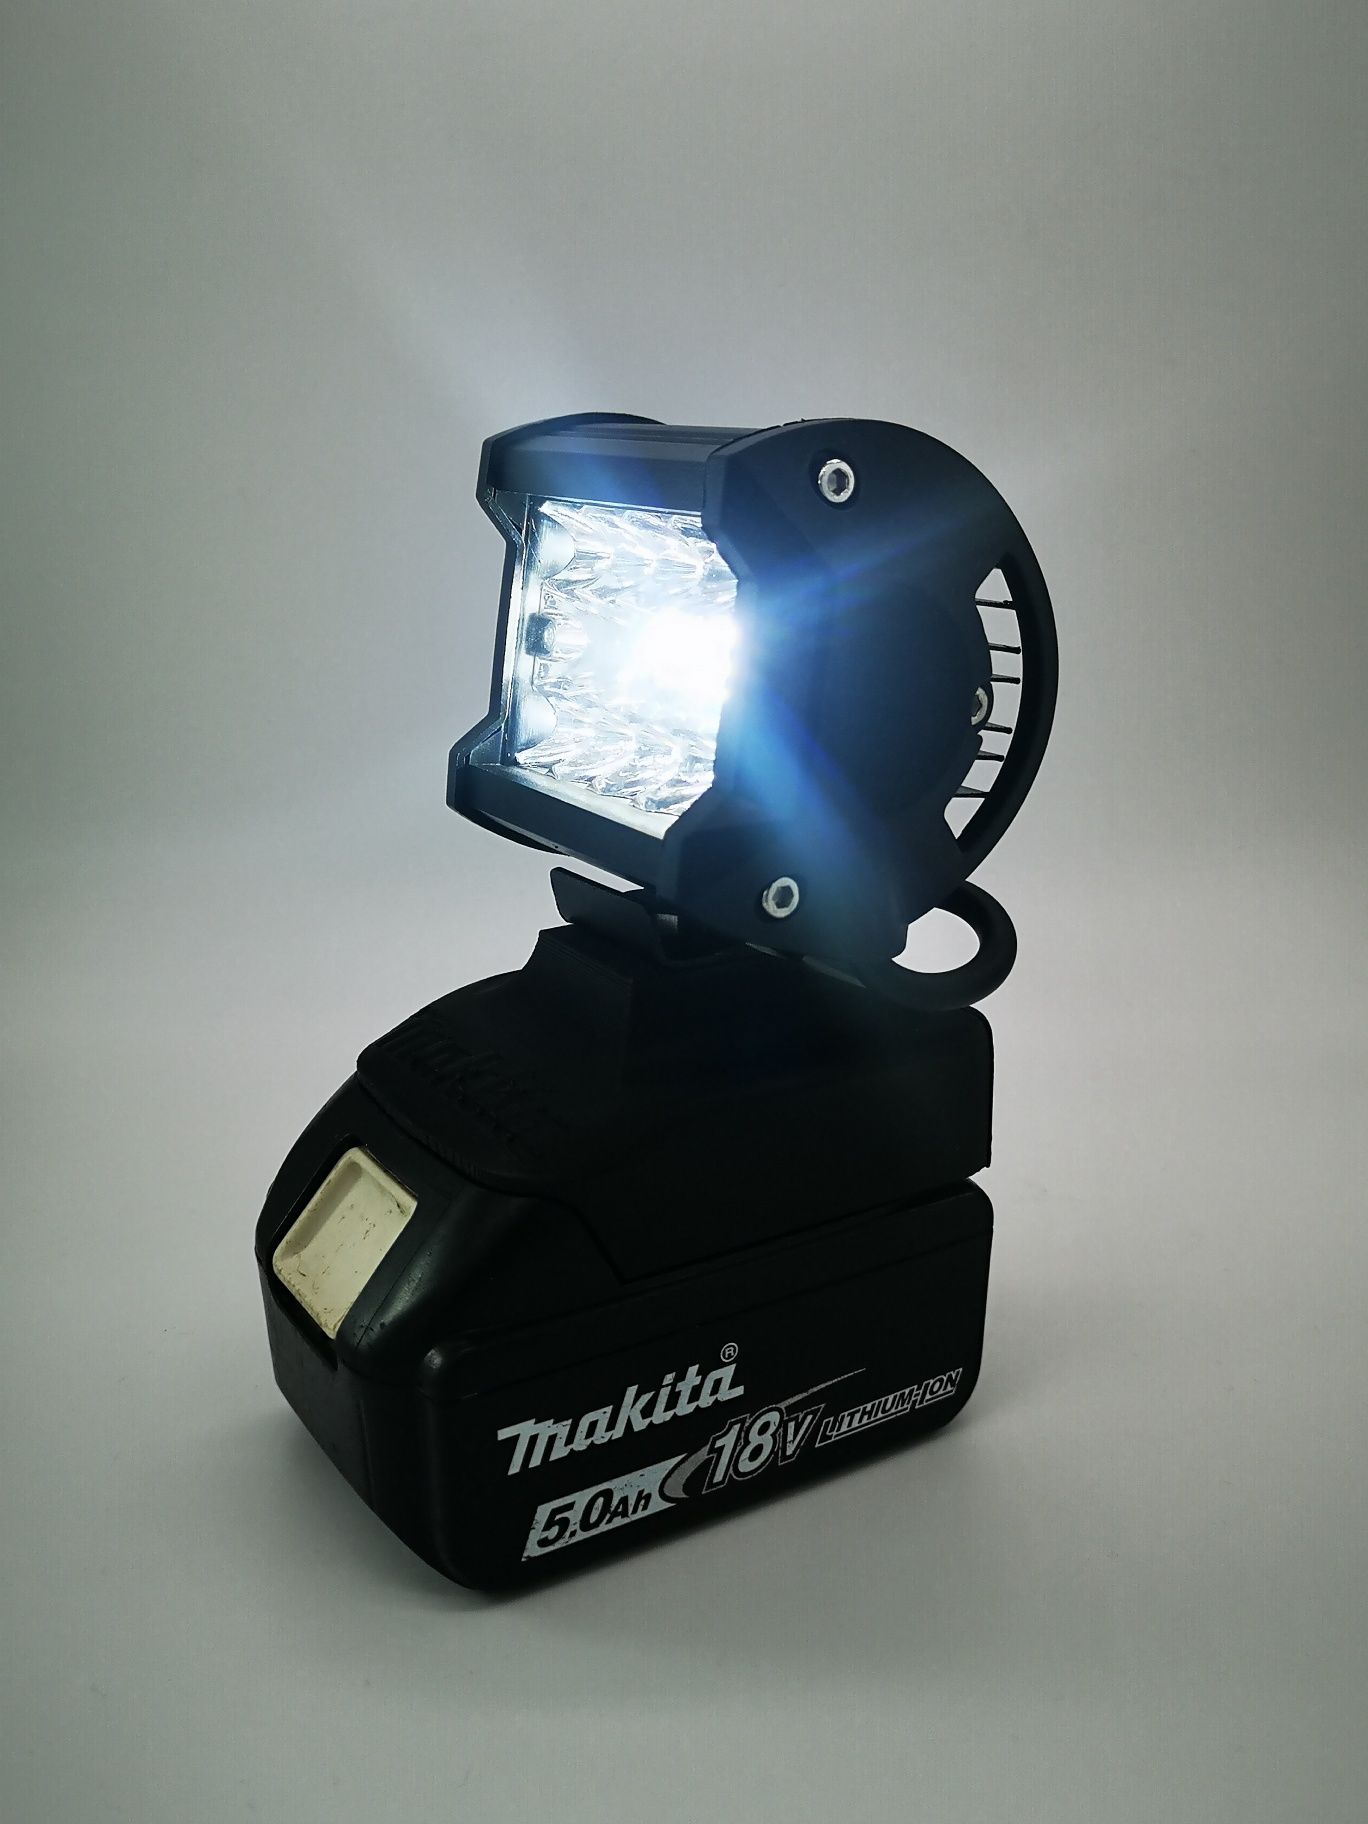 Makita 18v Lxt Lampa led z adapterem do akumulatorów Zabezpieczenie